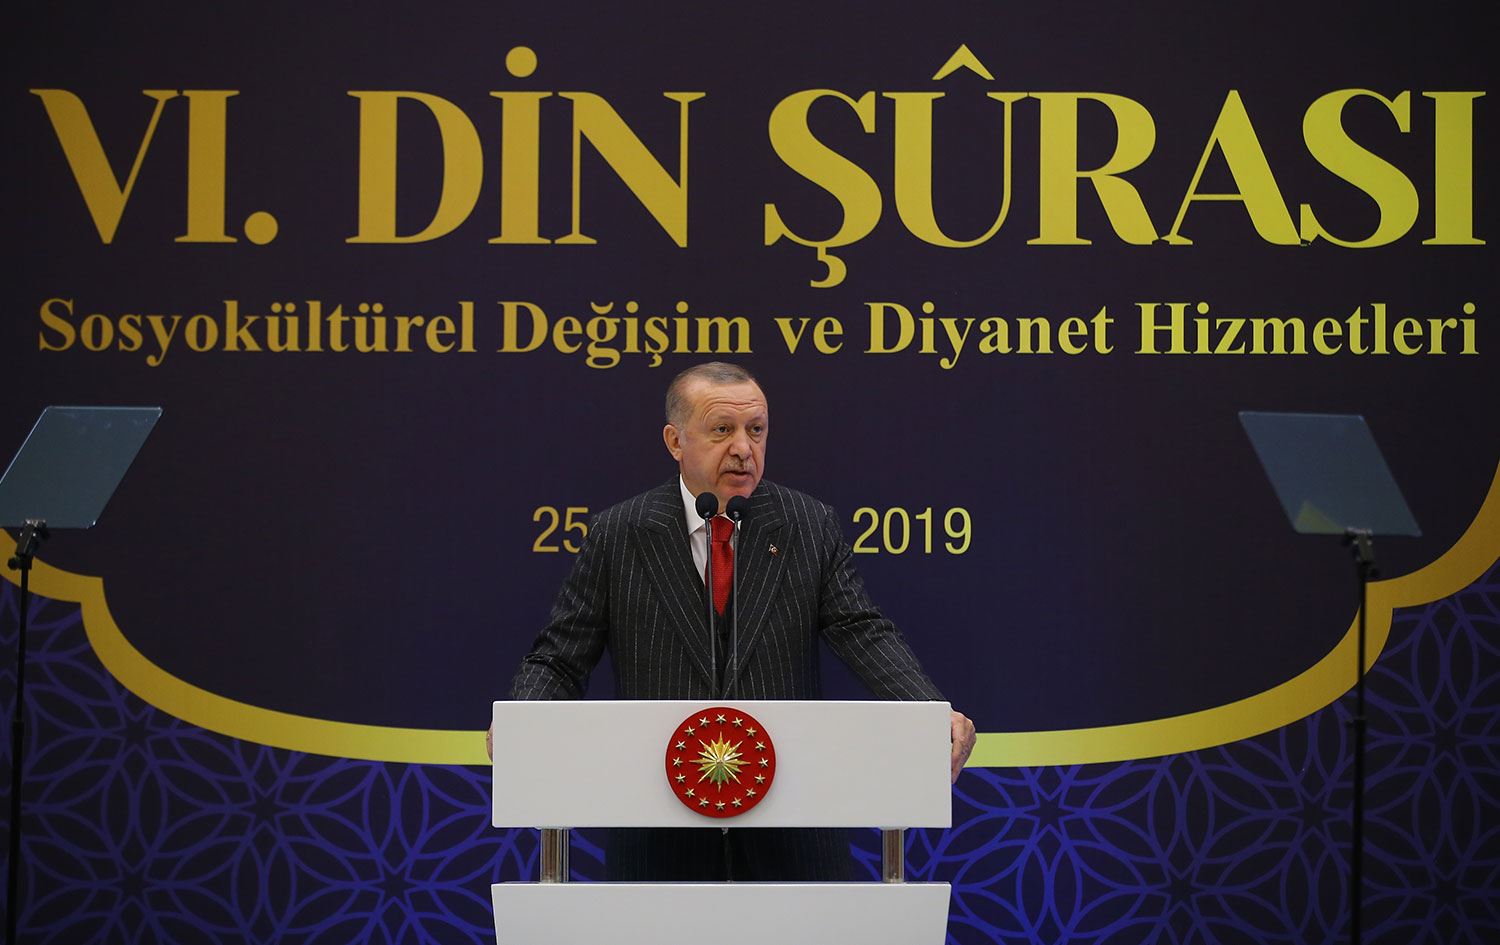 Президент Ердоган взяв участь у заключній програмі засідання, яке завершилось прийняттям документа із 37 пунктів.